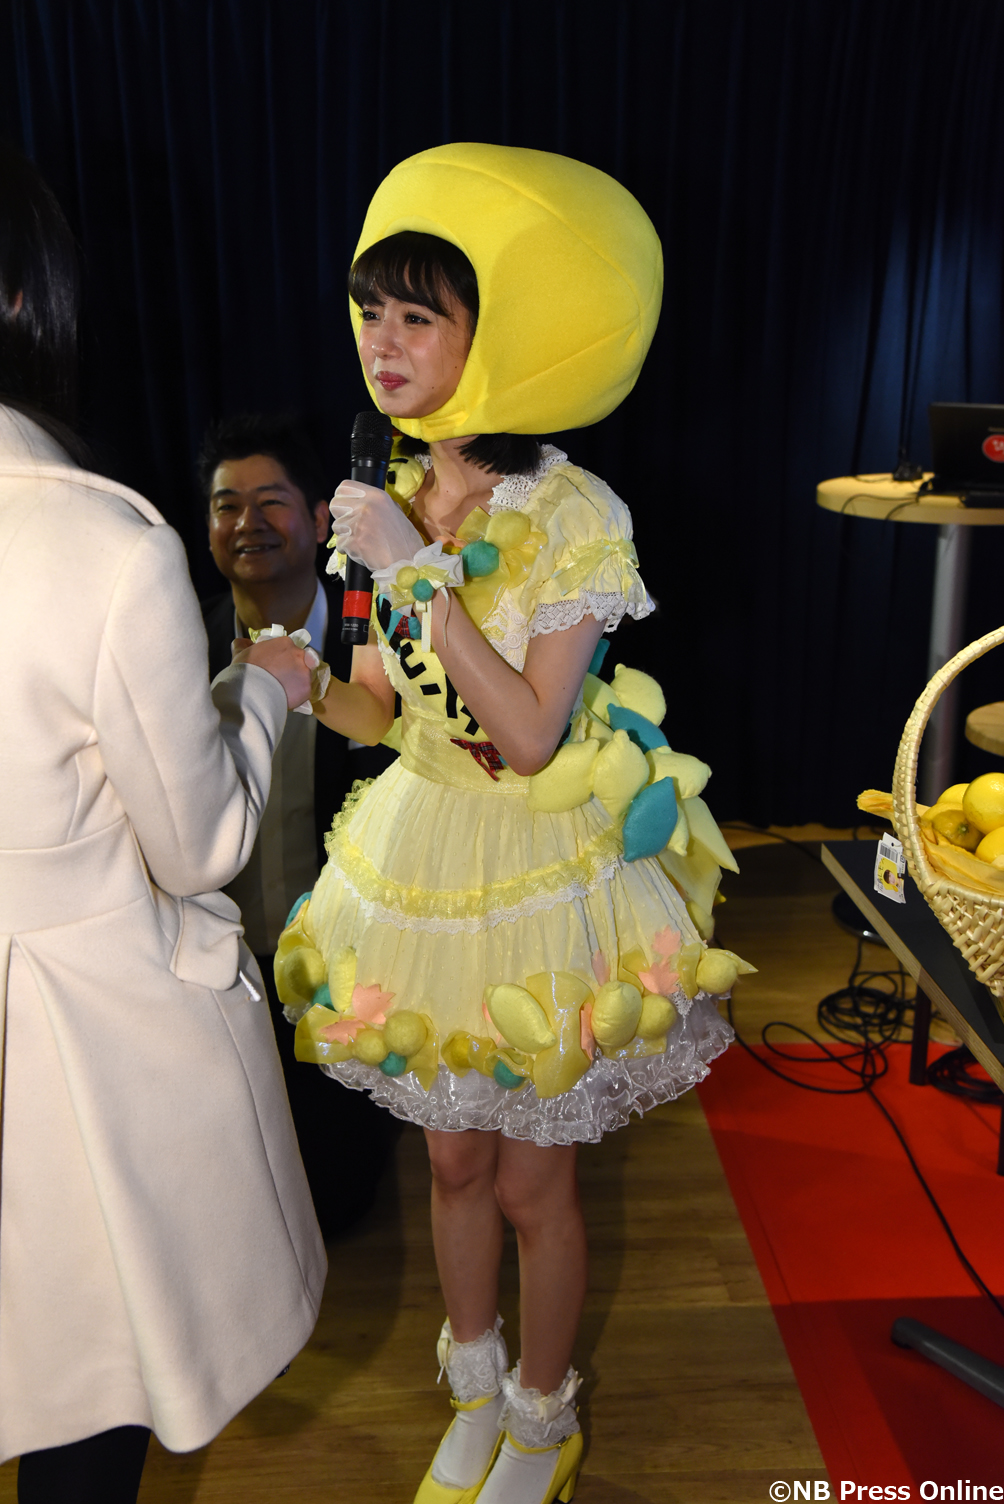 市川美織 レモンの魅力を学んでPR! 広島レモンdeキレートークショー